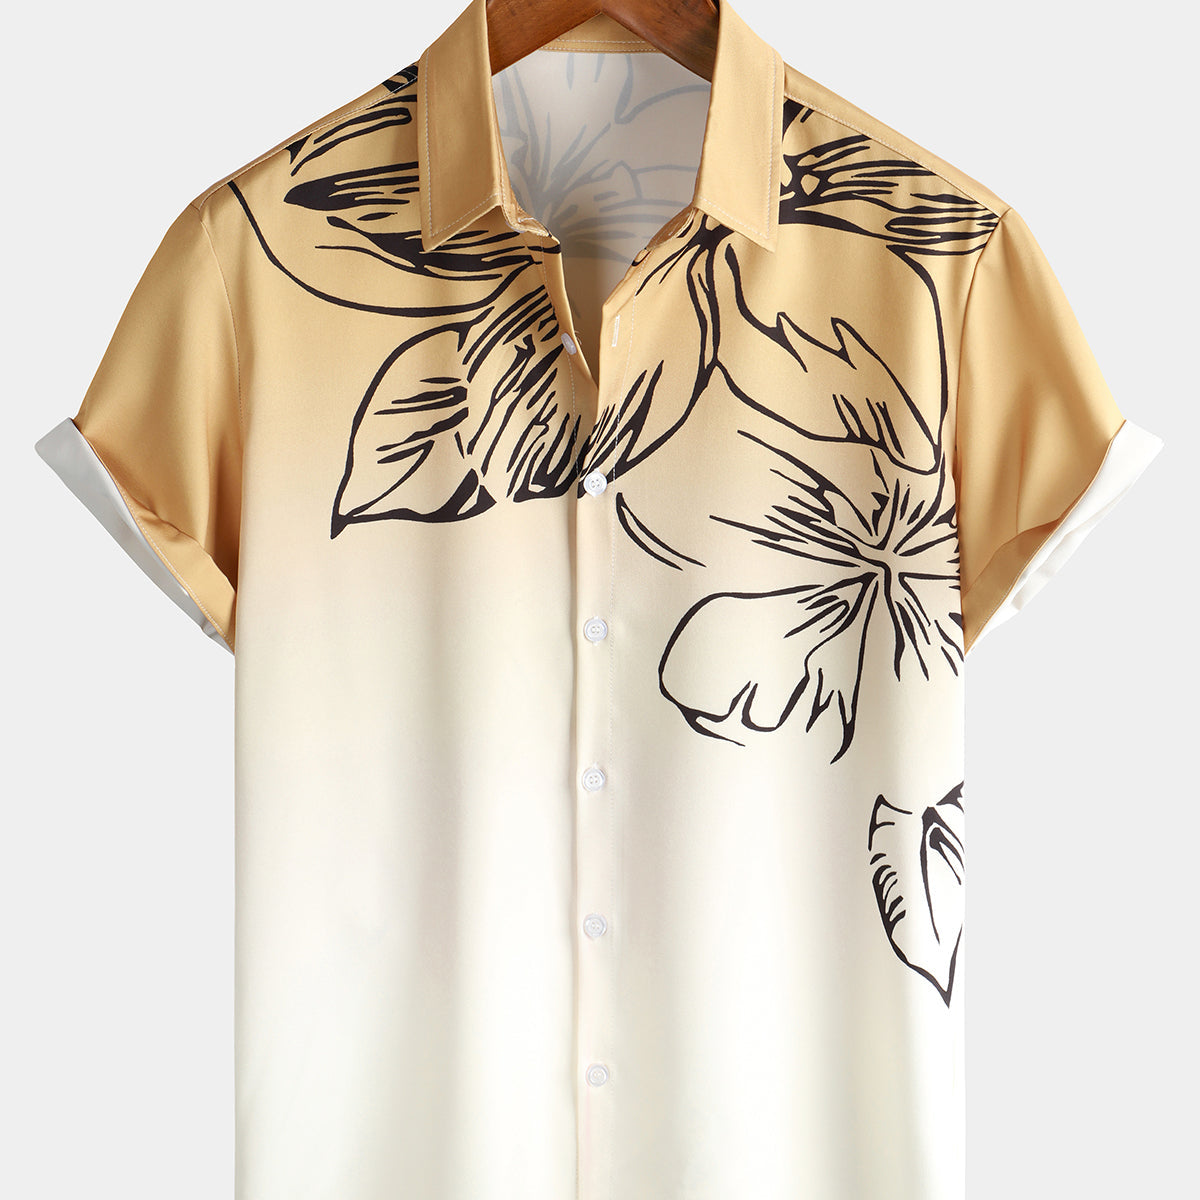 Camisa hawaiana de playa artística de manga corta con botones de verano degradado floral marrón y blanco para hombre